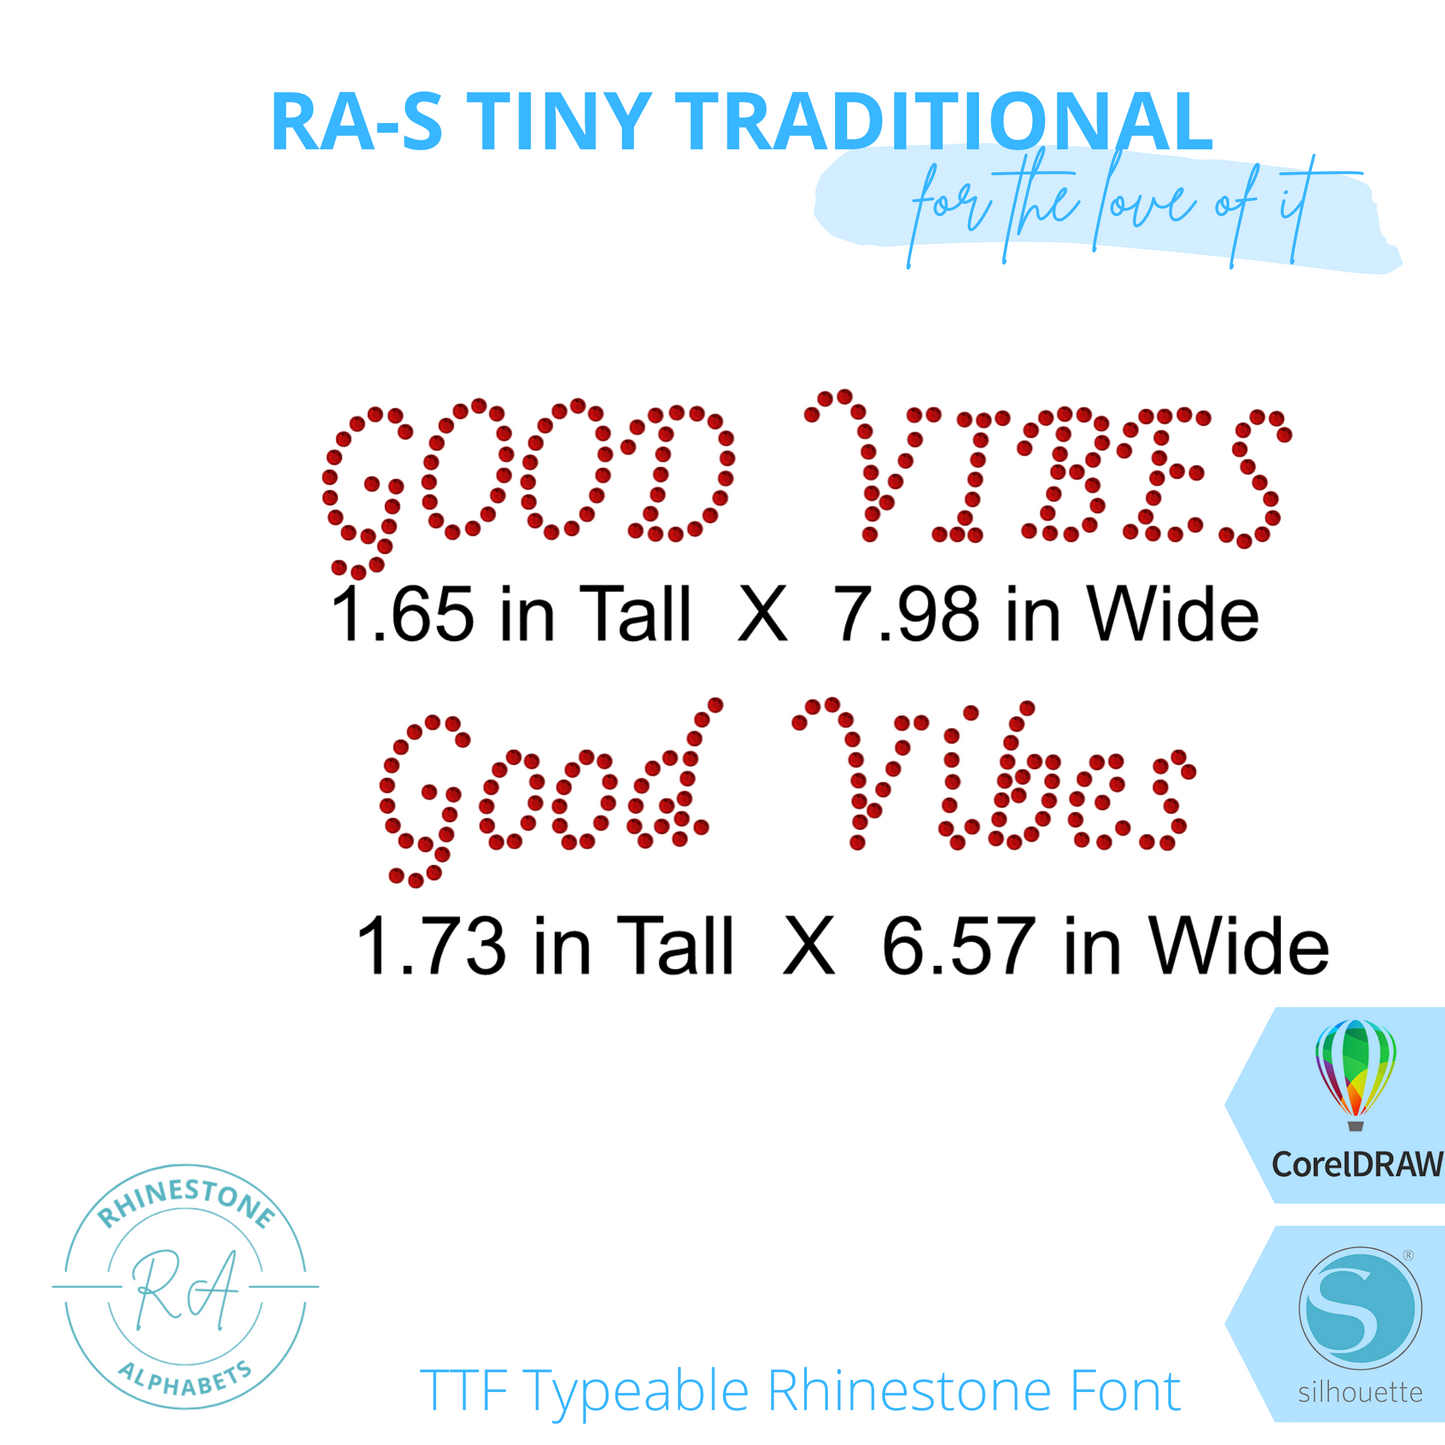 RA-S Tiny Traditional - RhinestoneAlphabets